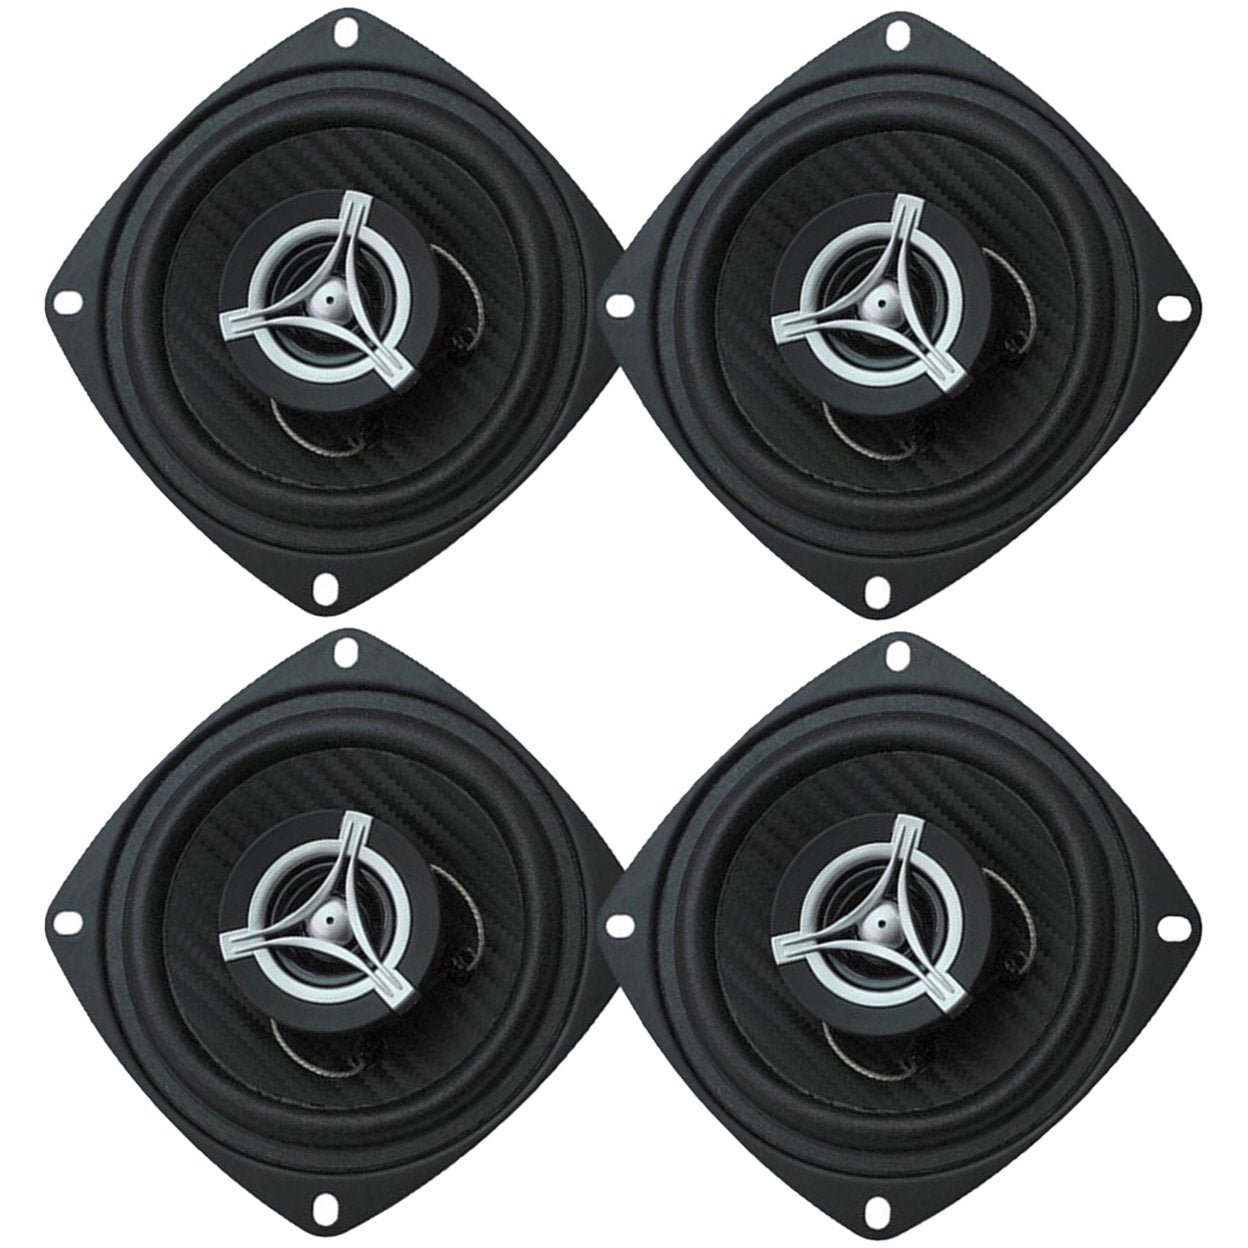 2 Power Acoustik EF -42 4” 2-Way Full-Range Speakers